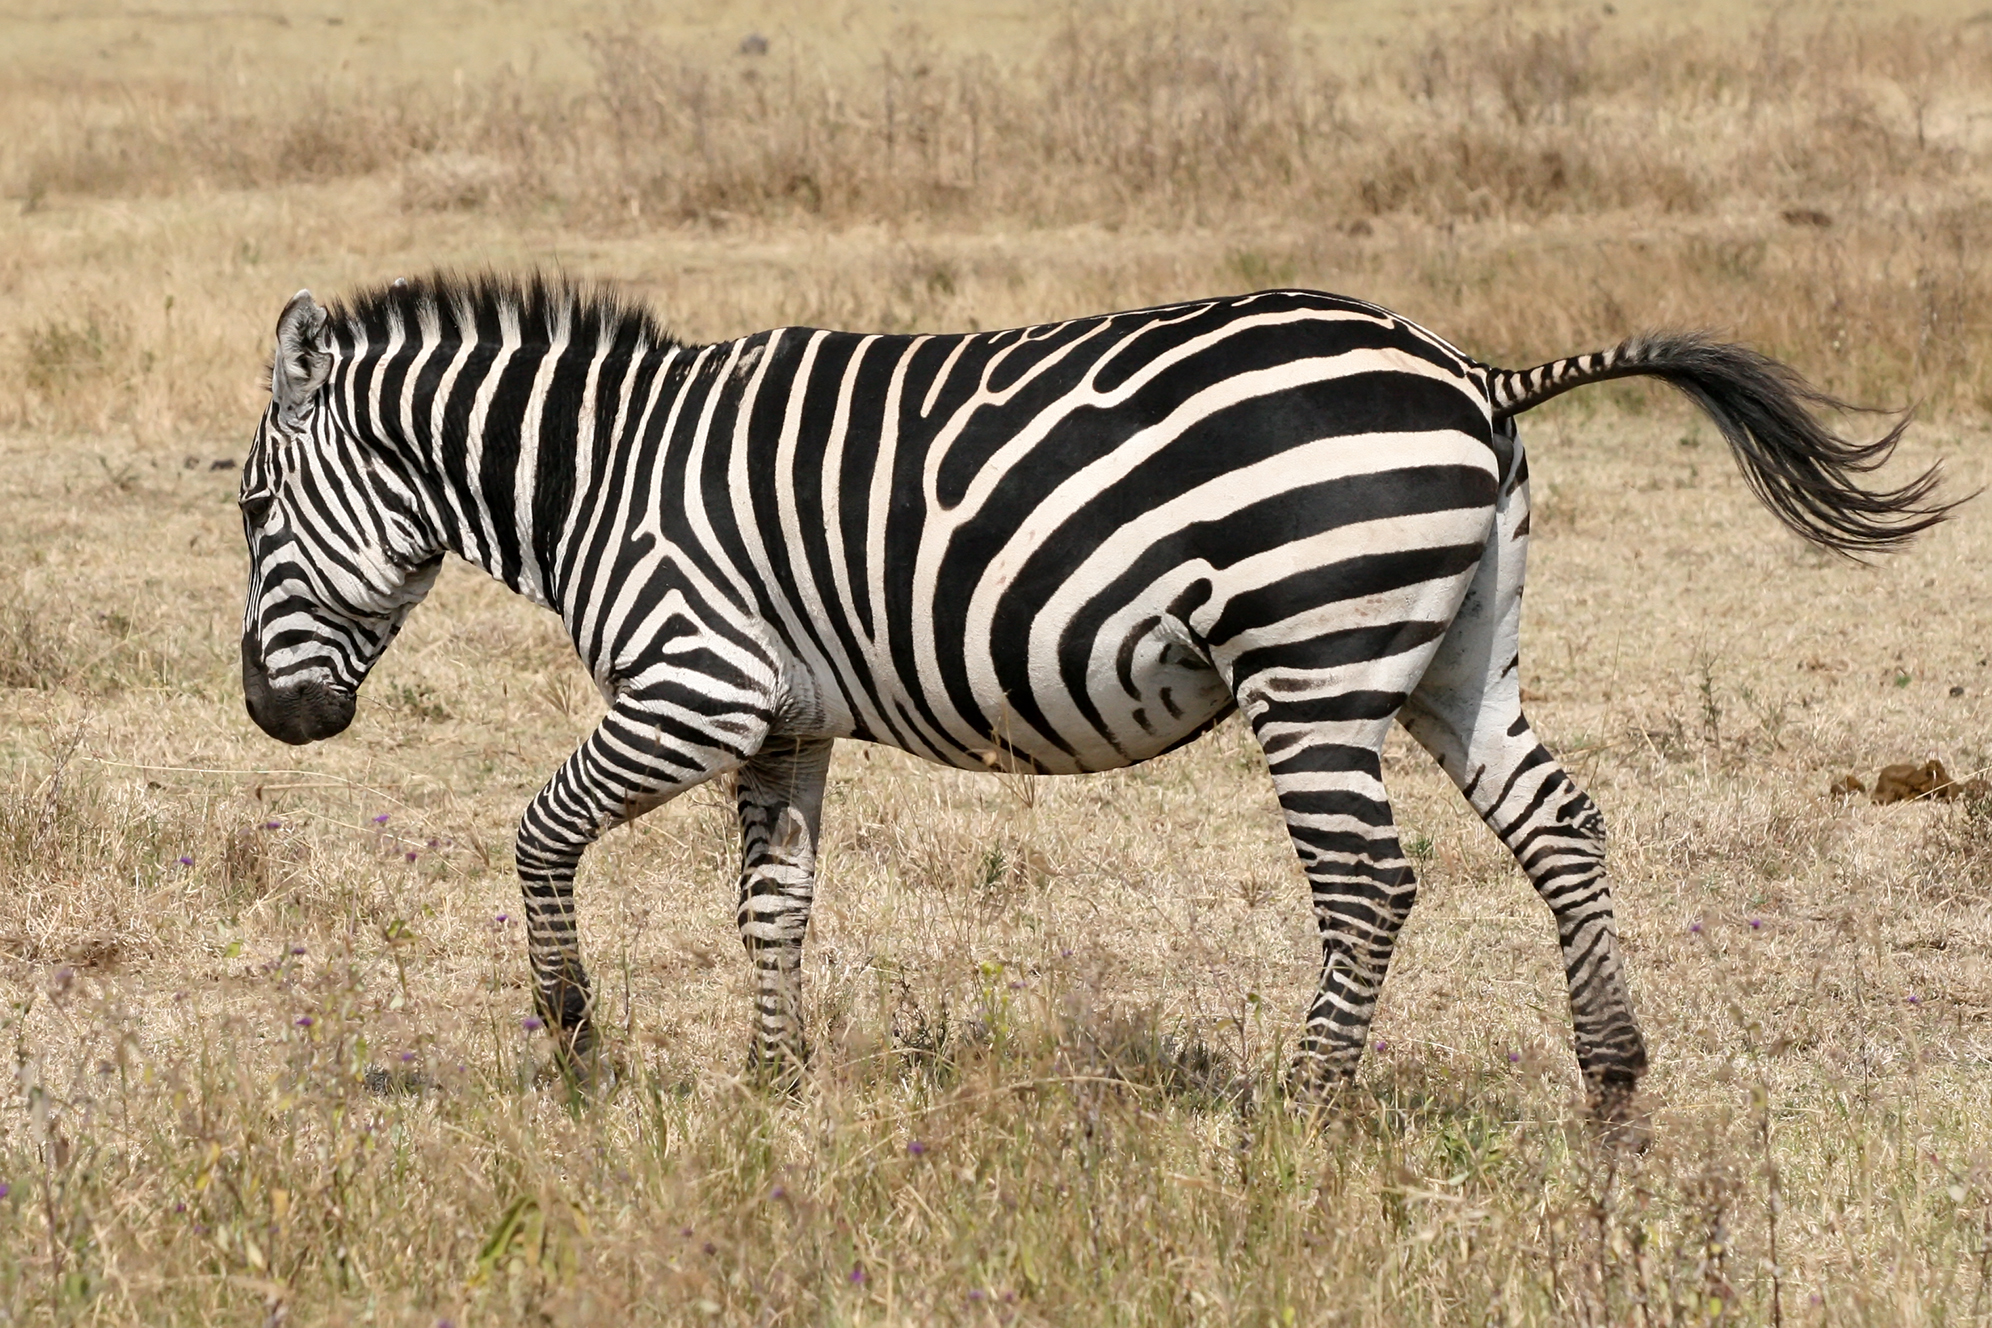 gambar kuda zebra hd